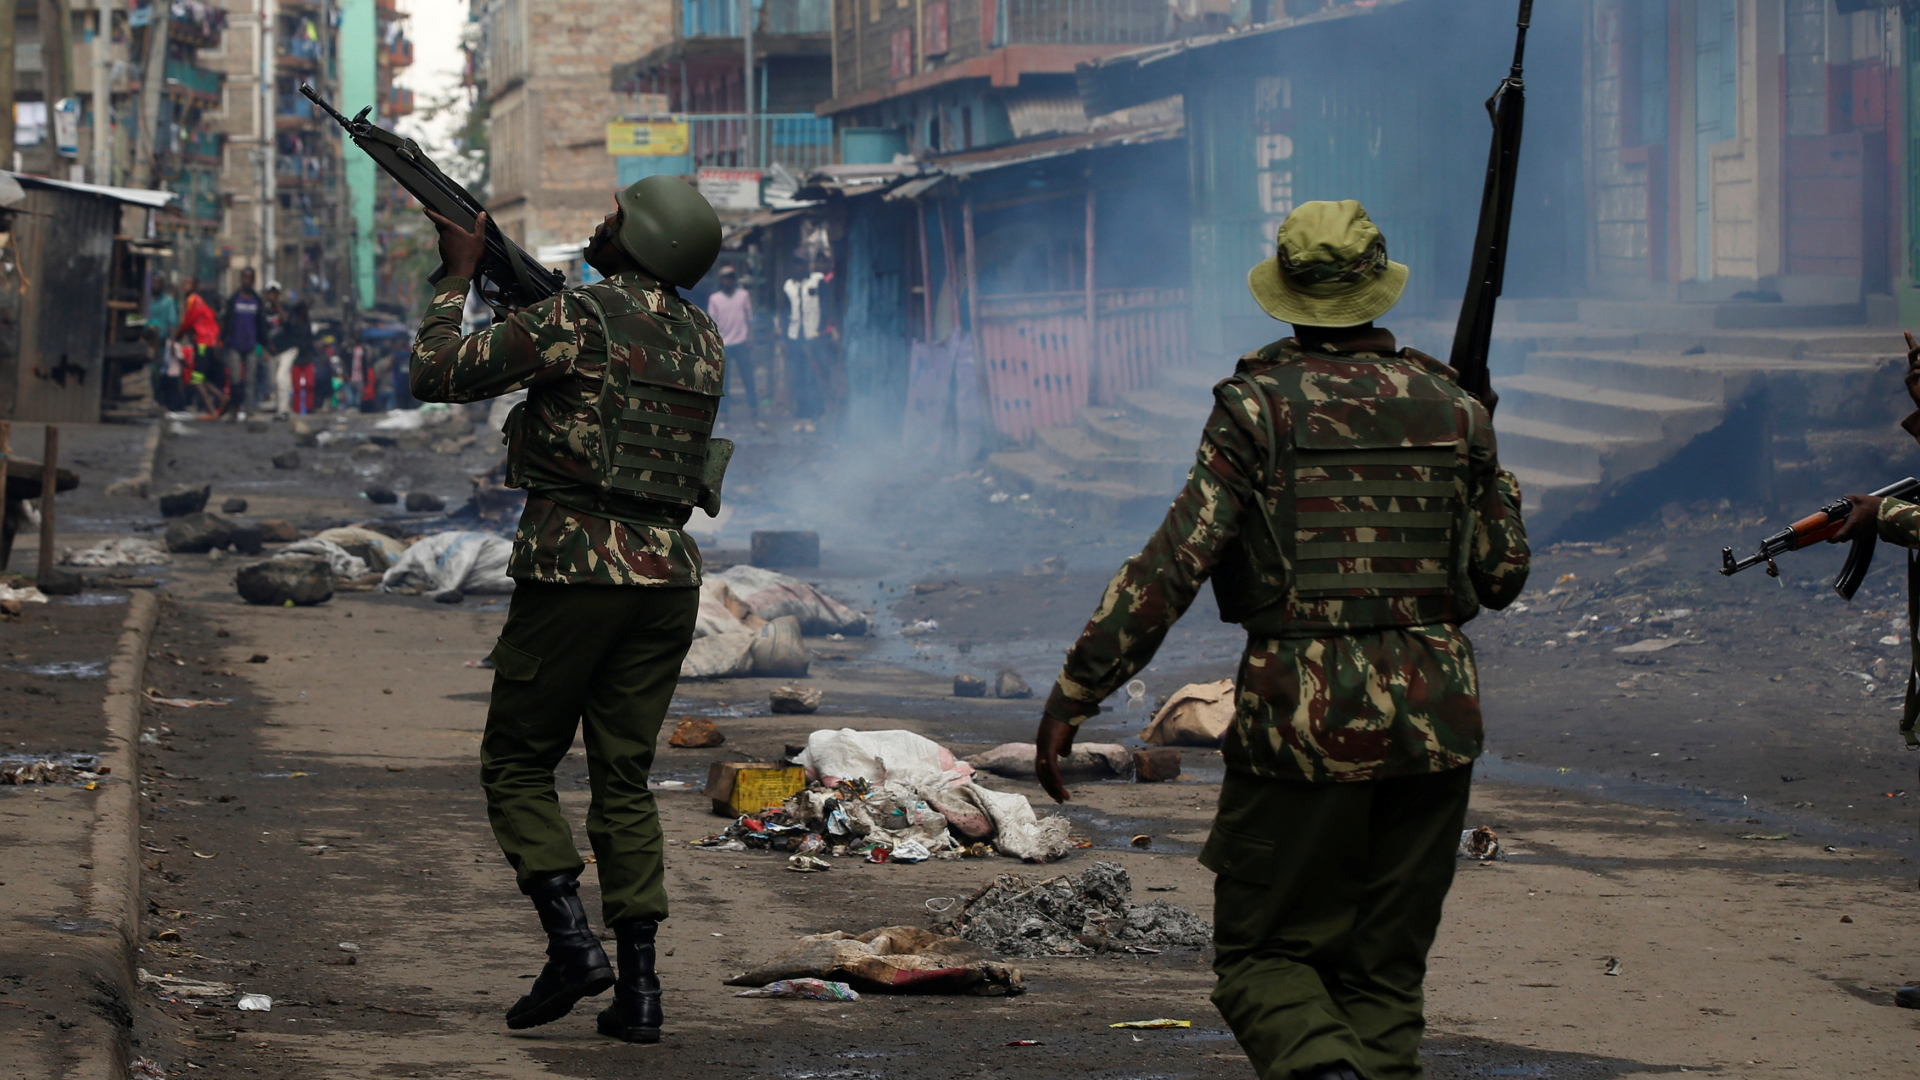 Demonstranten in Kenia | REUTERS